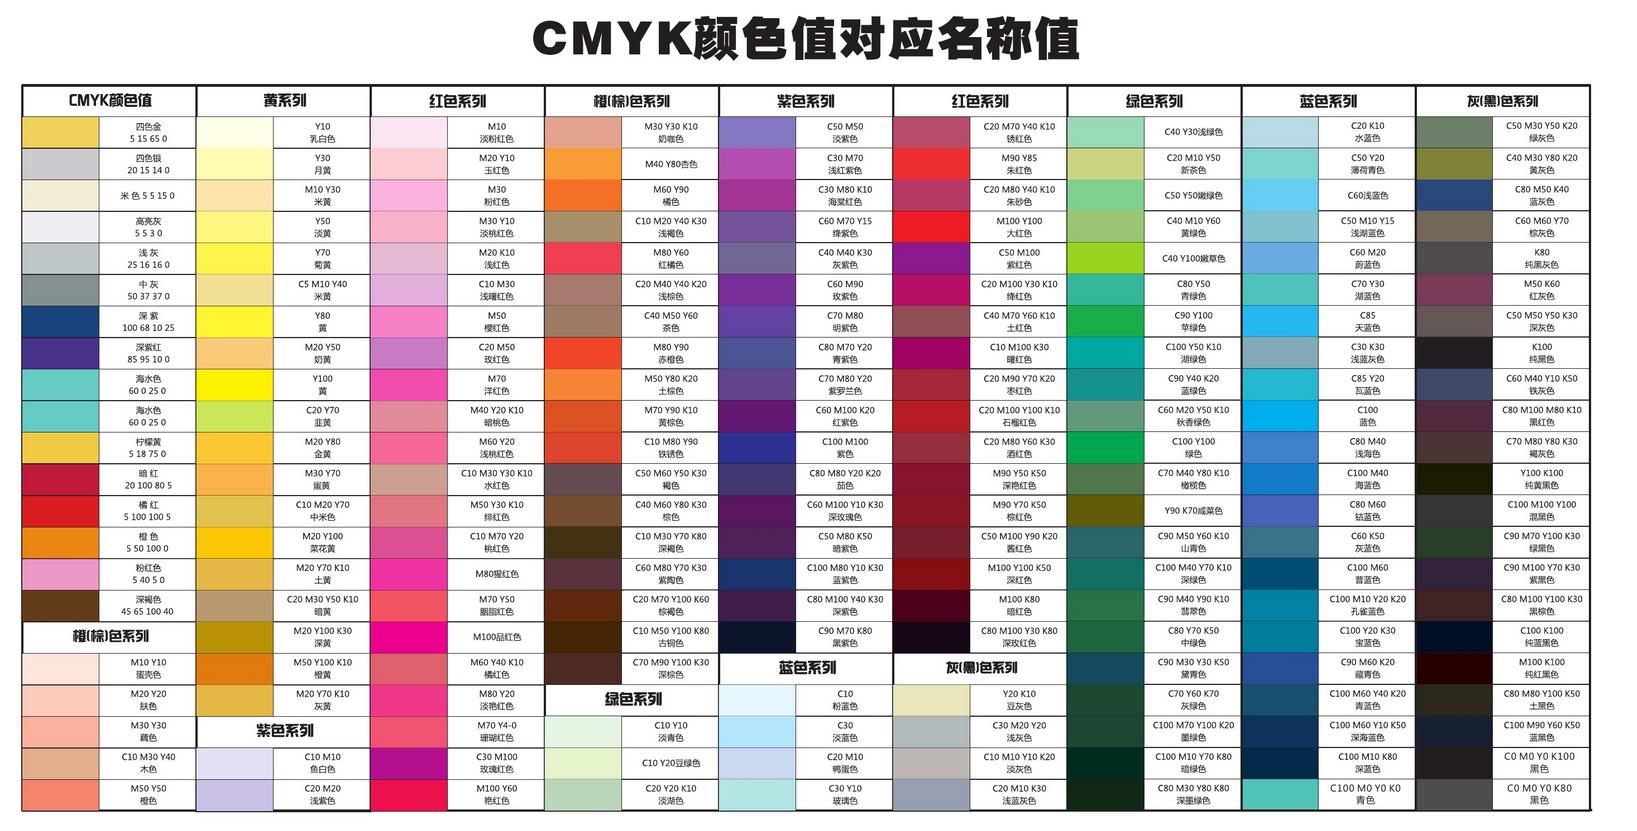 用3色调出12个常用色色卡04【日下部自选3色调色】艺术家级水彩颜料试色 - 哔哩哔哩